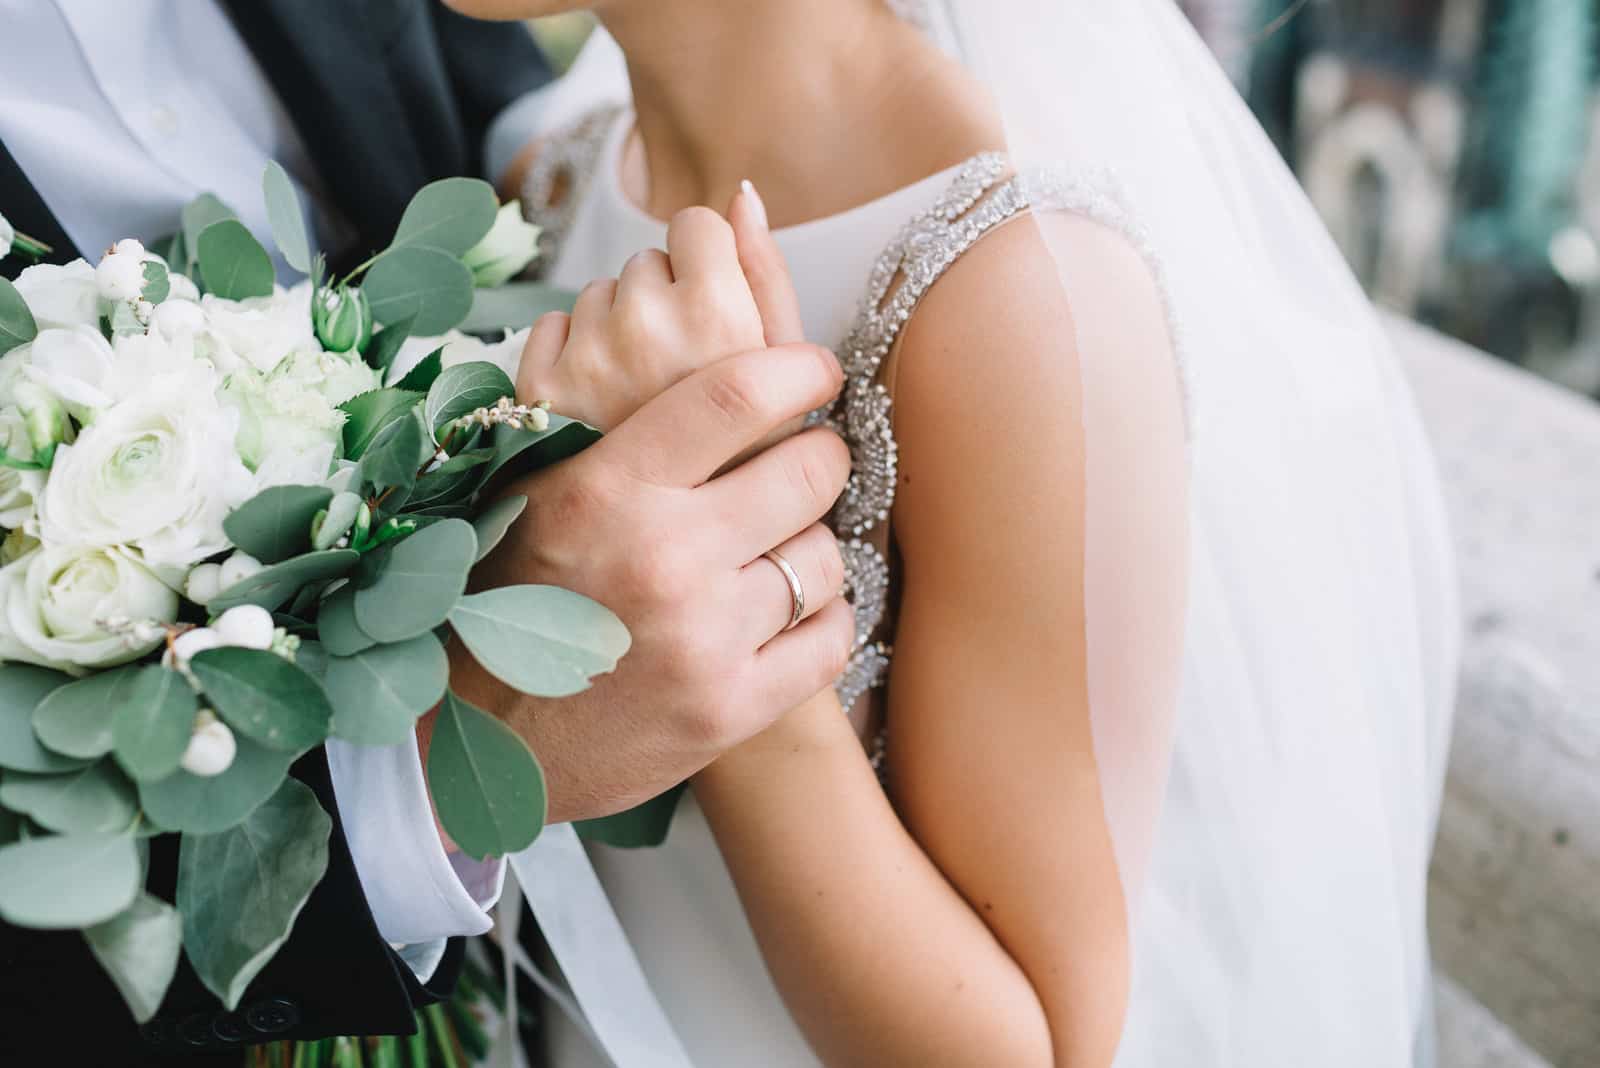 Die Hand des Bräutigams hält das Armband der Braut zärtlich